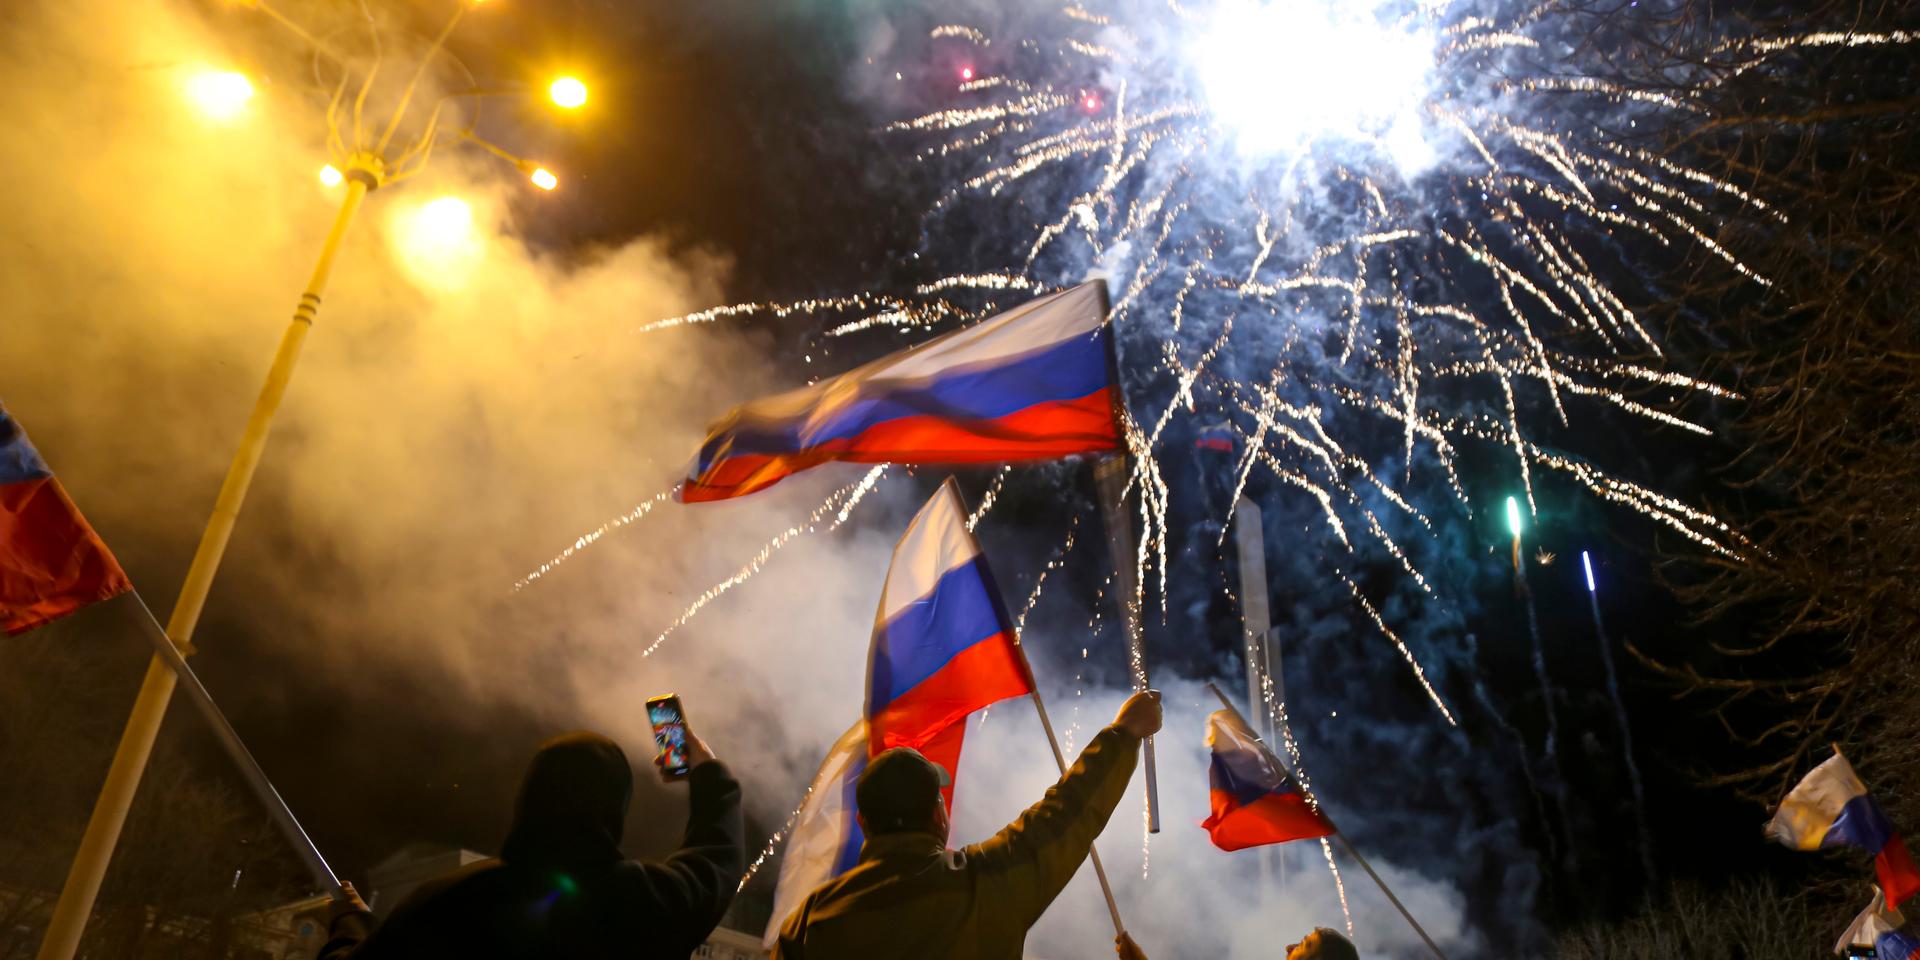 I utbrytarregionen Donetsk som kontrolleras av ryska separatister firades det i går efter Putins besked om att erkänna utbrytar på måndagskvällen. 